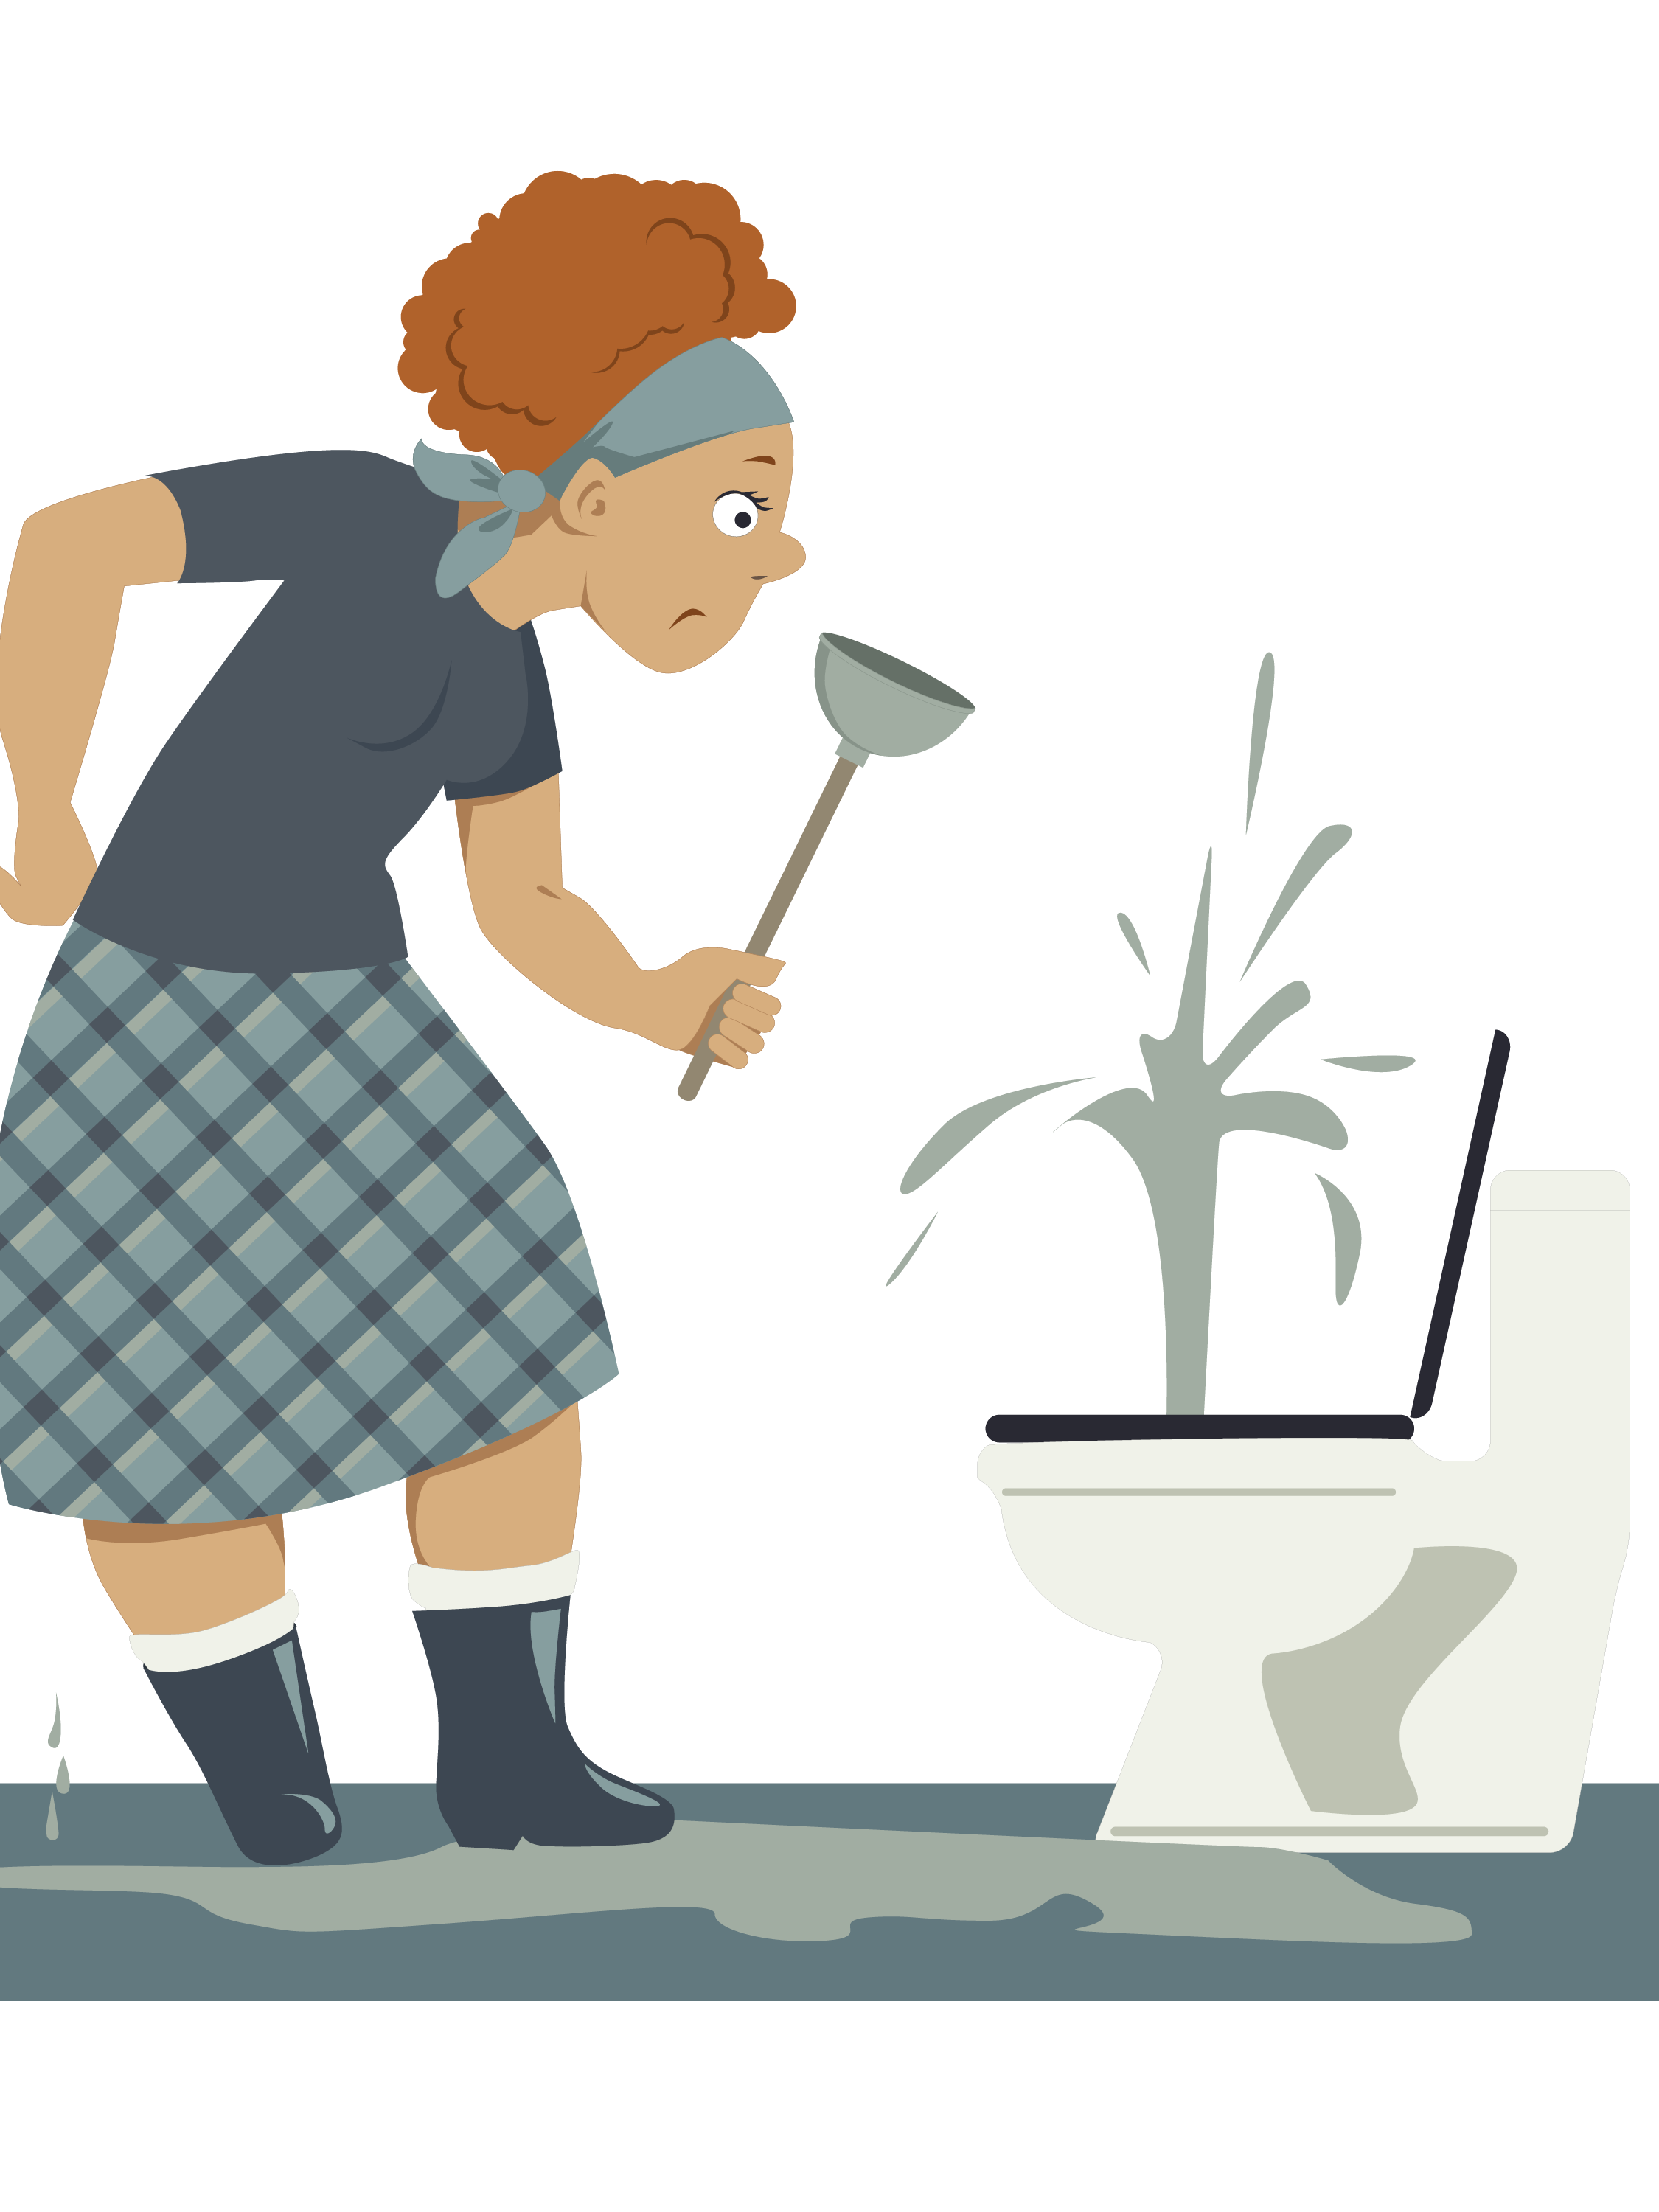 https://www.aquinoplumbing.com/wp-content/uploads/2019/08/Overflowing-Toilet-Graphic-for-website-01.png